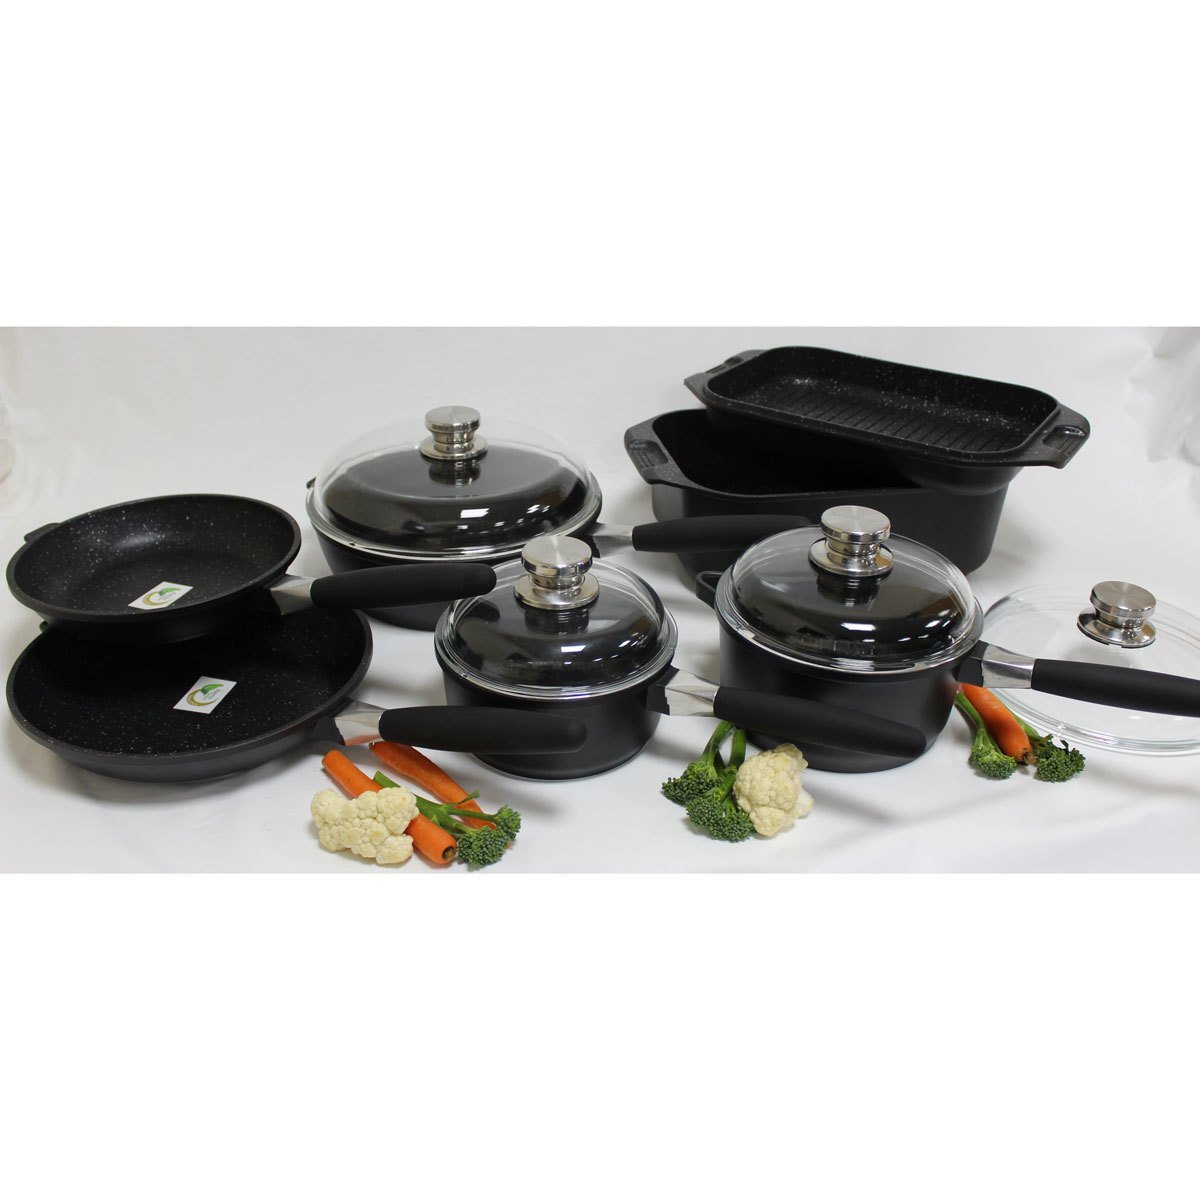 https://signatureretailstores.co.uk/cdn/shop/products/berghoff-eurocast-non-stick-11-piece-cookware-set-191325_1445x.jpg?v=1609818125